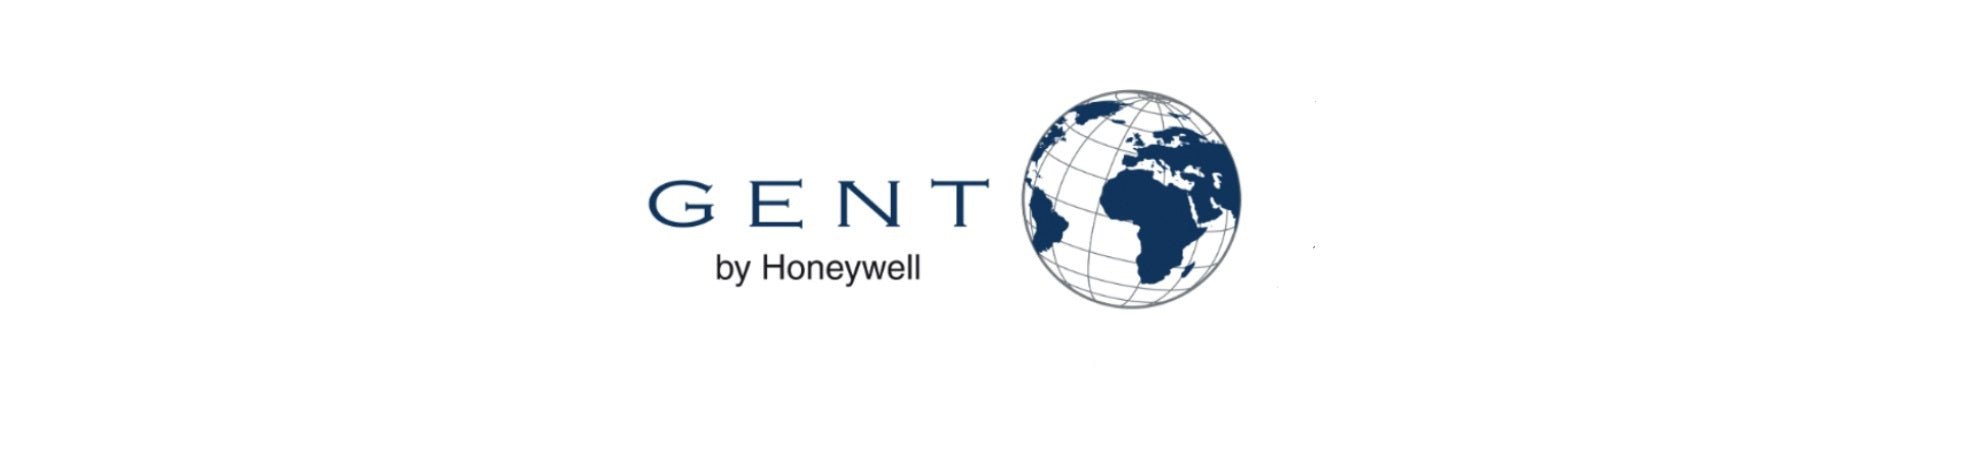 Honeywell Gent Addressable fire alarm system - Fire Trade Supplies